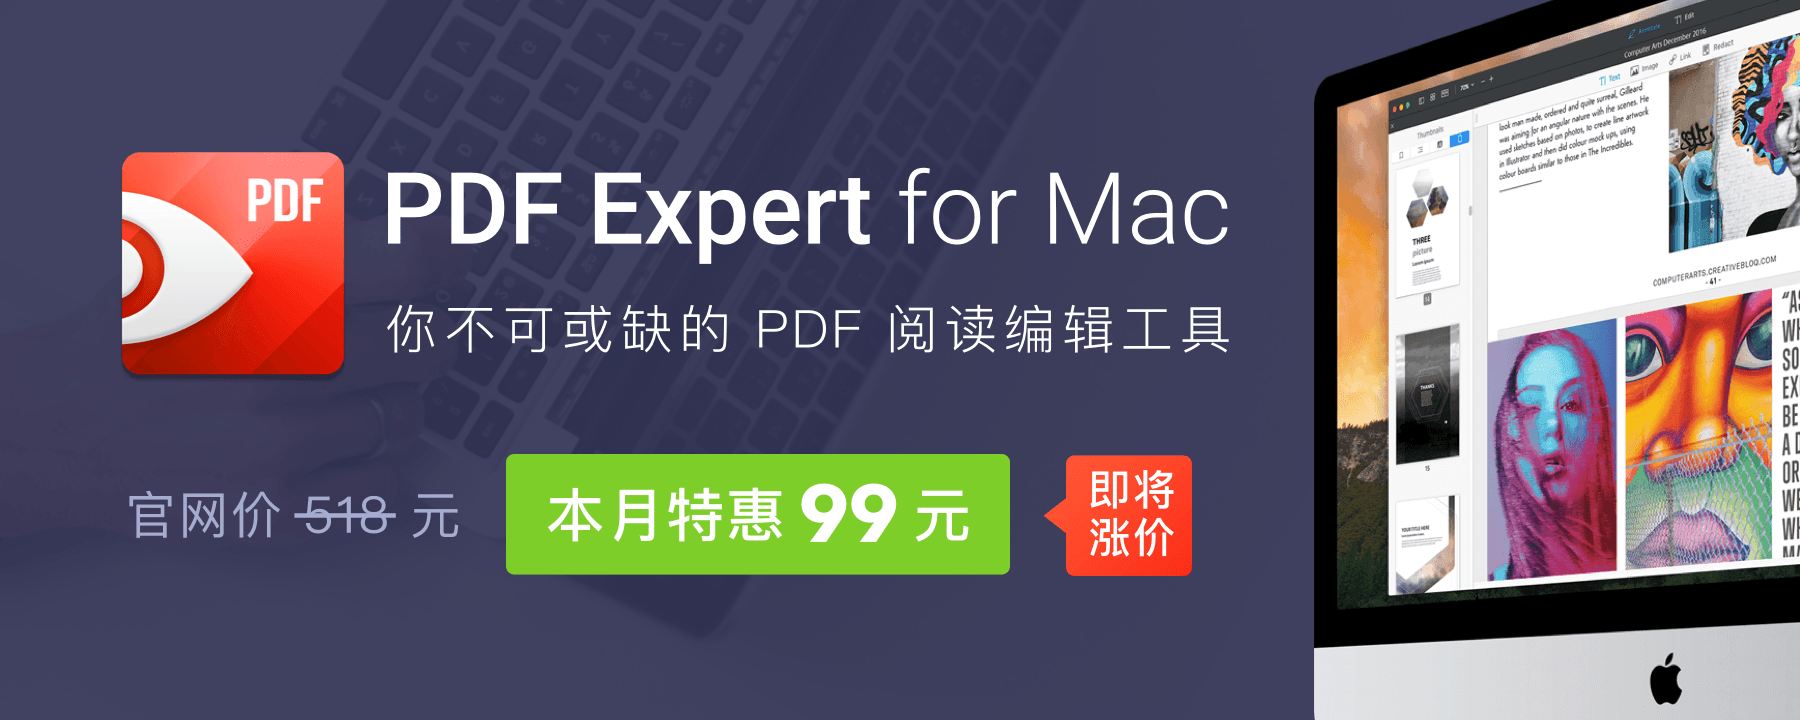 本月PDF Expert(PDF編輯工具)商城新用戶特惠價94元正版授權